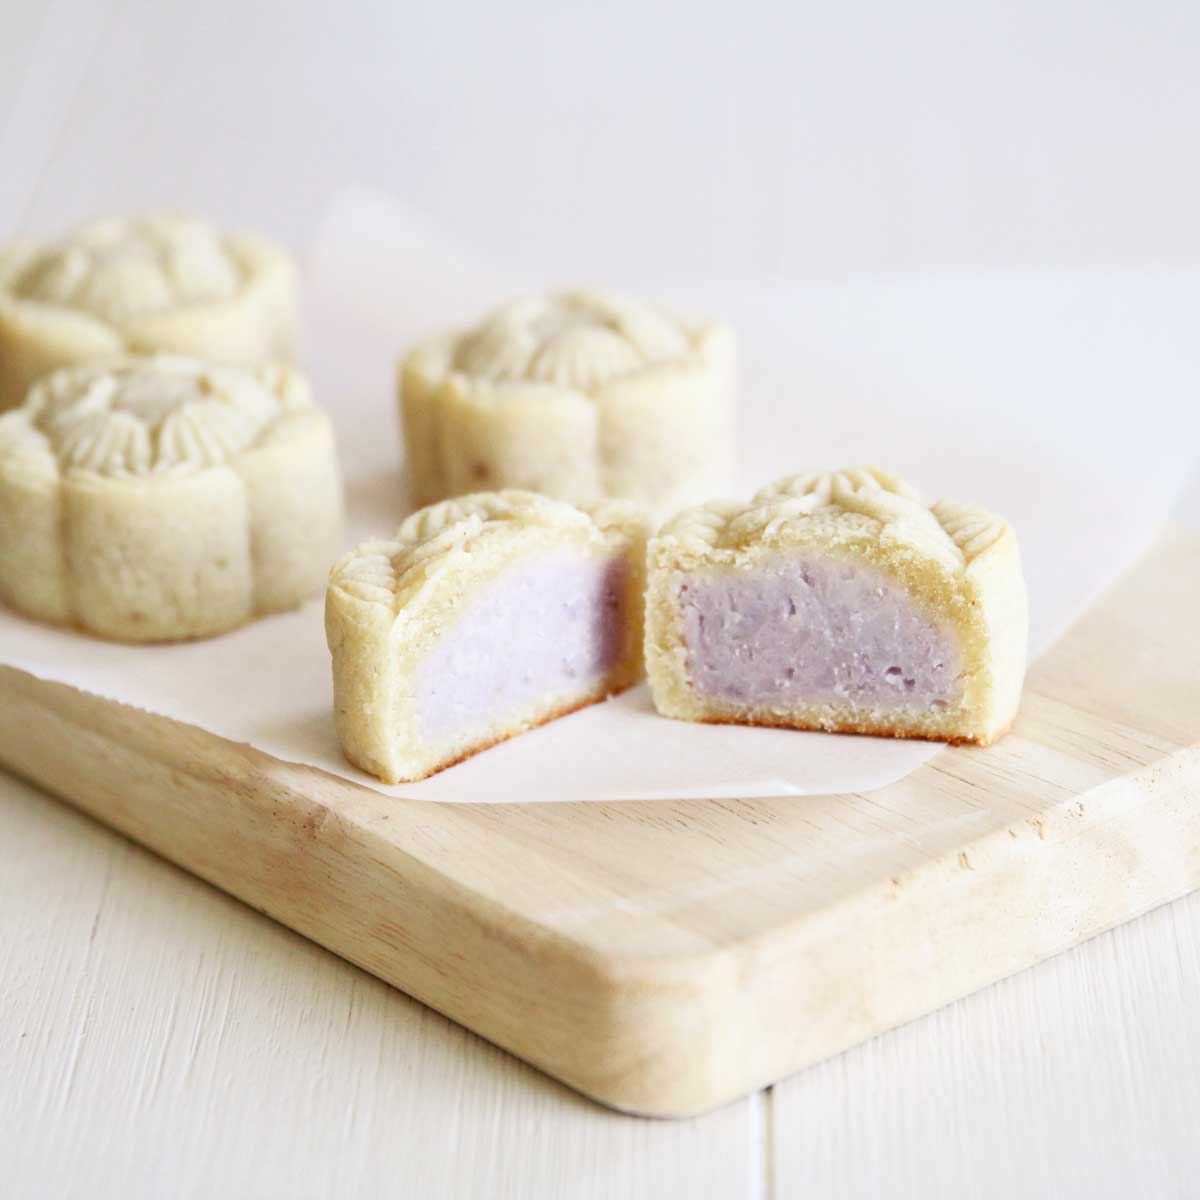 Almond Flour Taro Mooncakes (Vegan & Gluten Free) - Brown Sugar Whipped Cream